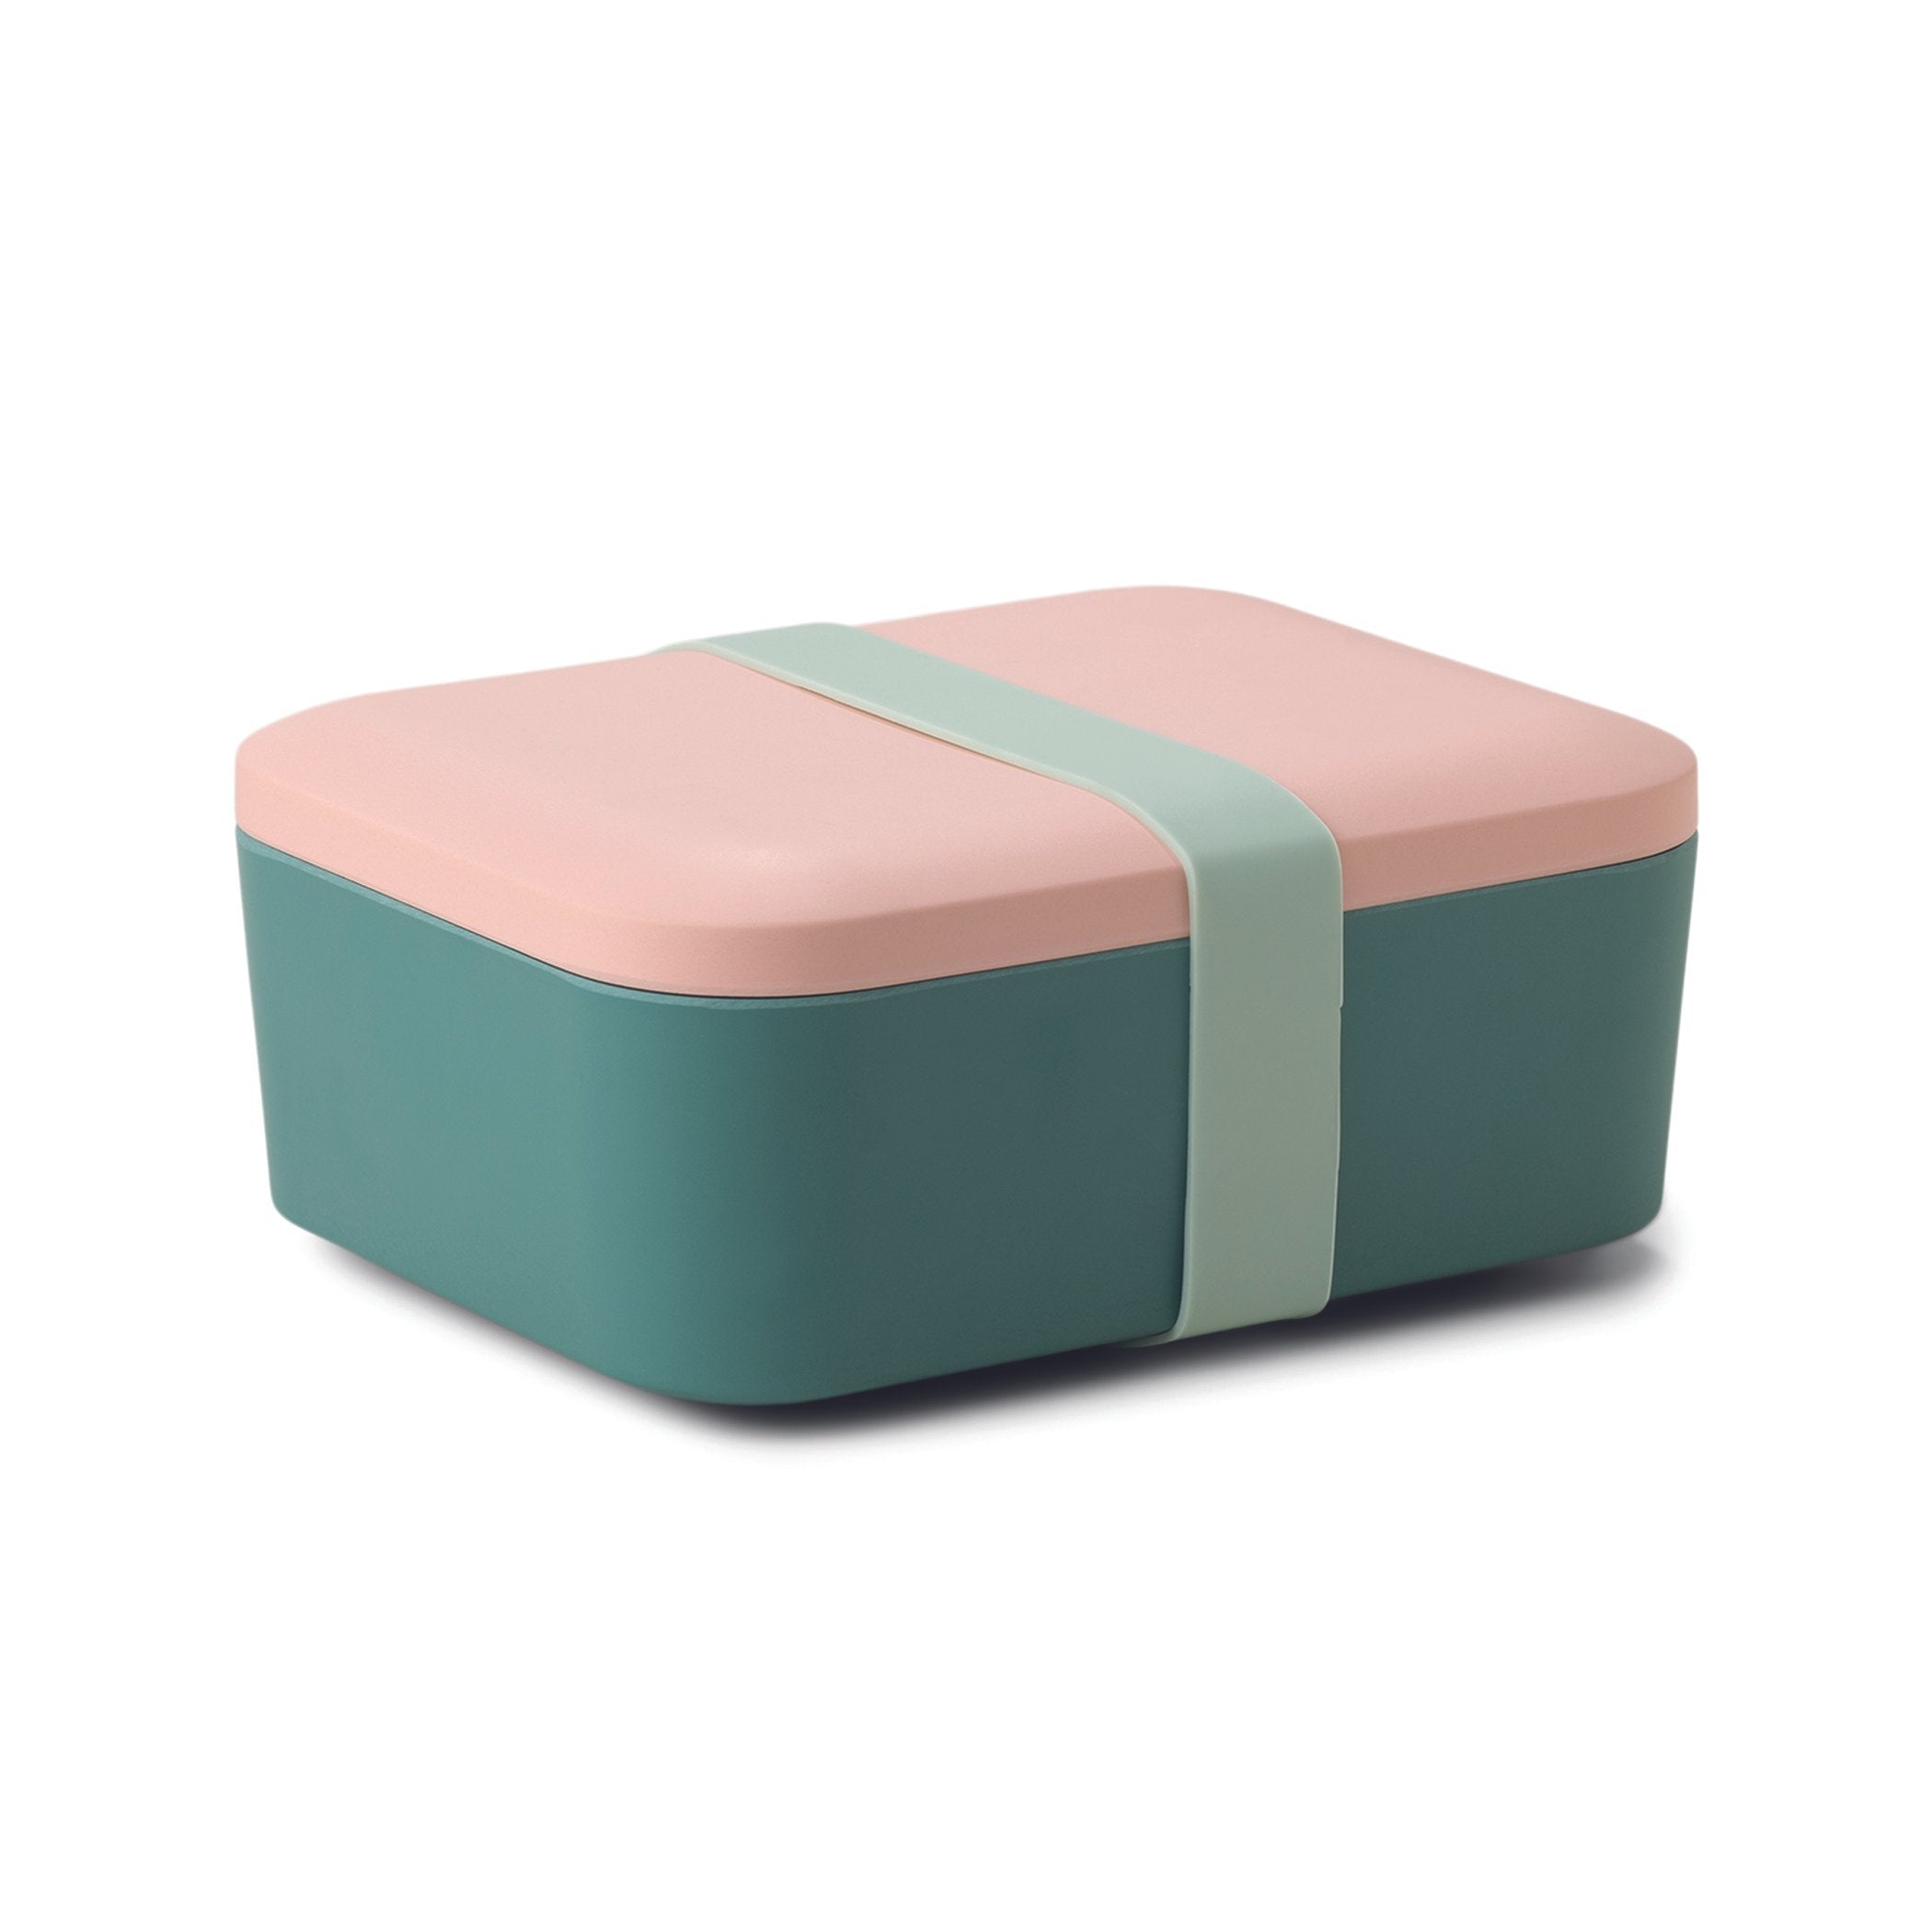 Designworks Ink Color Block Melamine Lunch Box with Lid